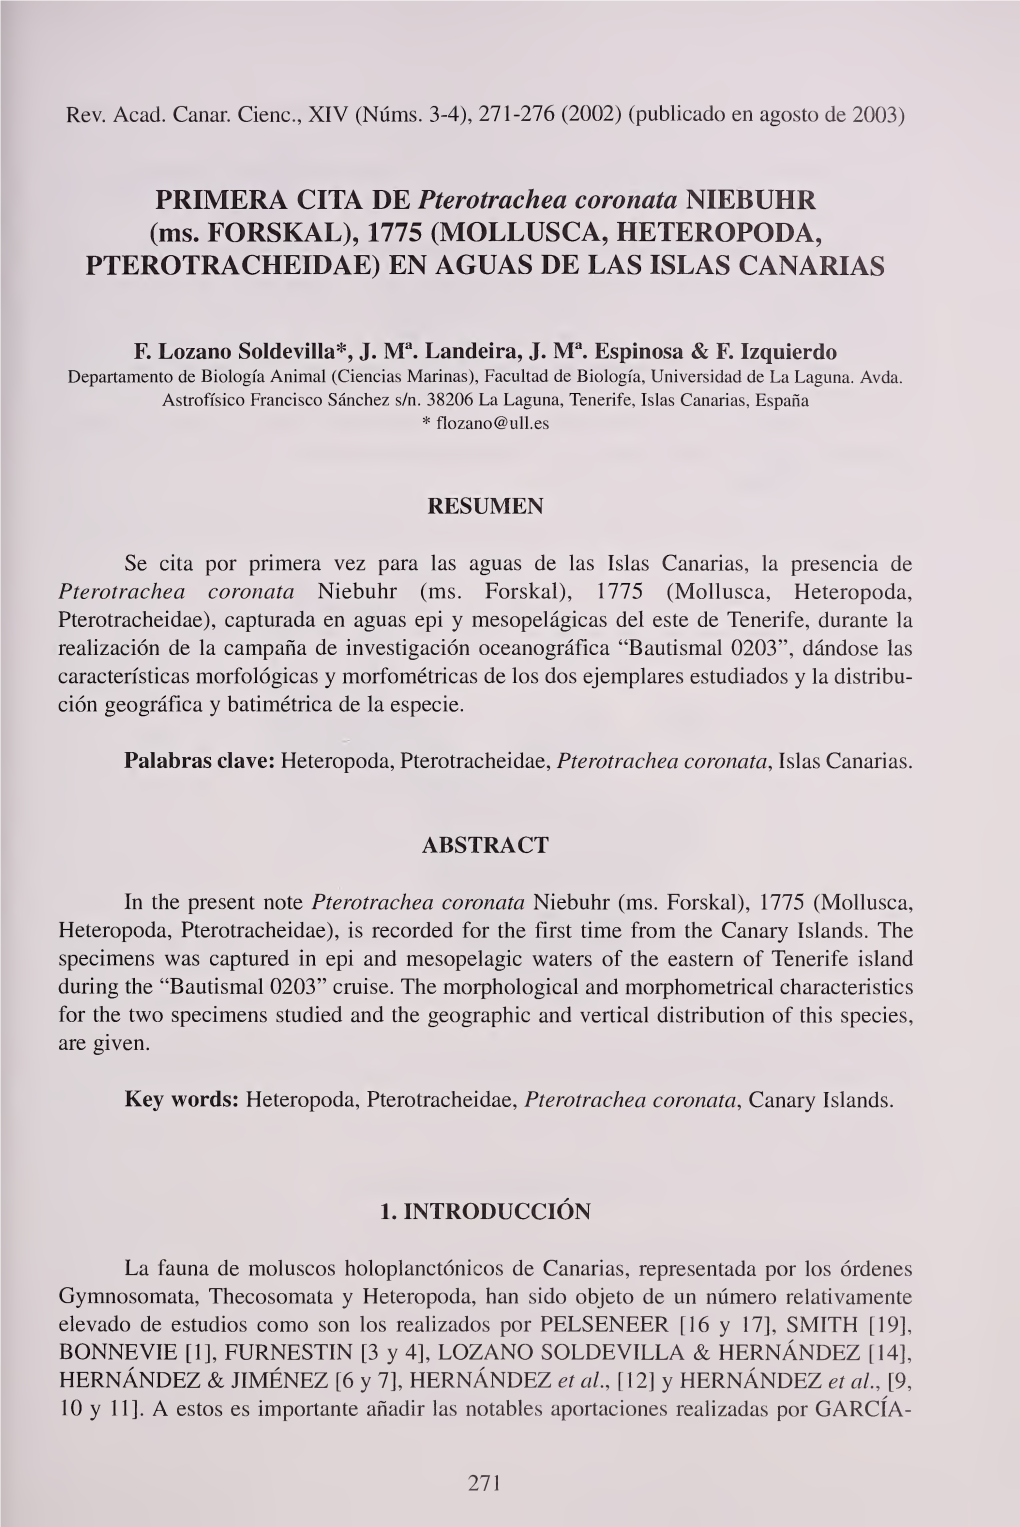 PRIMERA CITA DE Pterotrachea Coronata NIEBUHR (Ms. FORSKAL), 1775 (MOLLUSCA, HETEROPODA, PTEROTRACHEIDAE) EN AGUAS DE LAS ISLAS CANARIAS